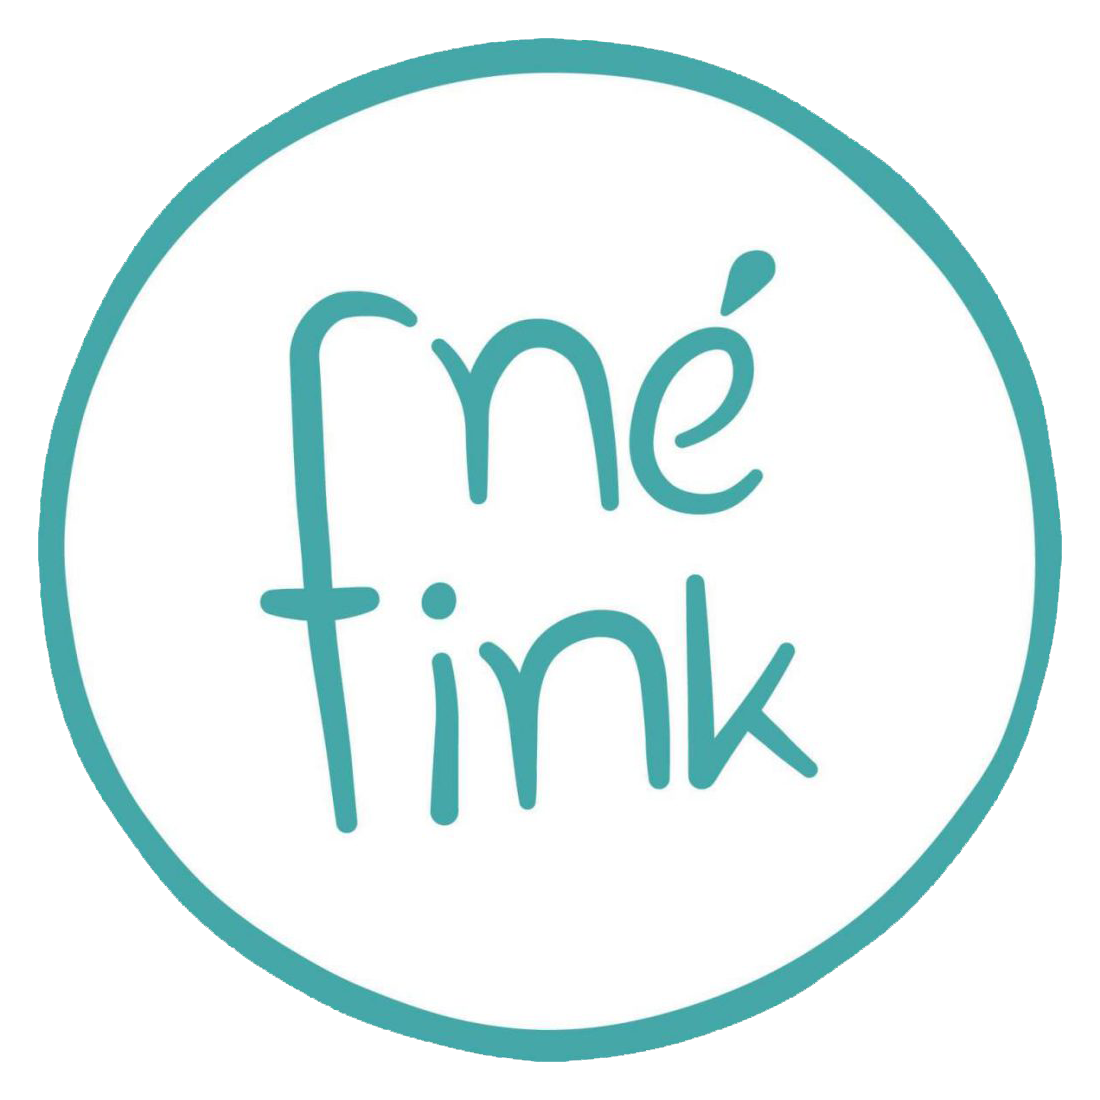 Logo Né Fink: Der Name handgeschrieben in einem Kreis